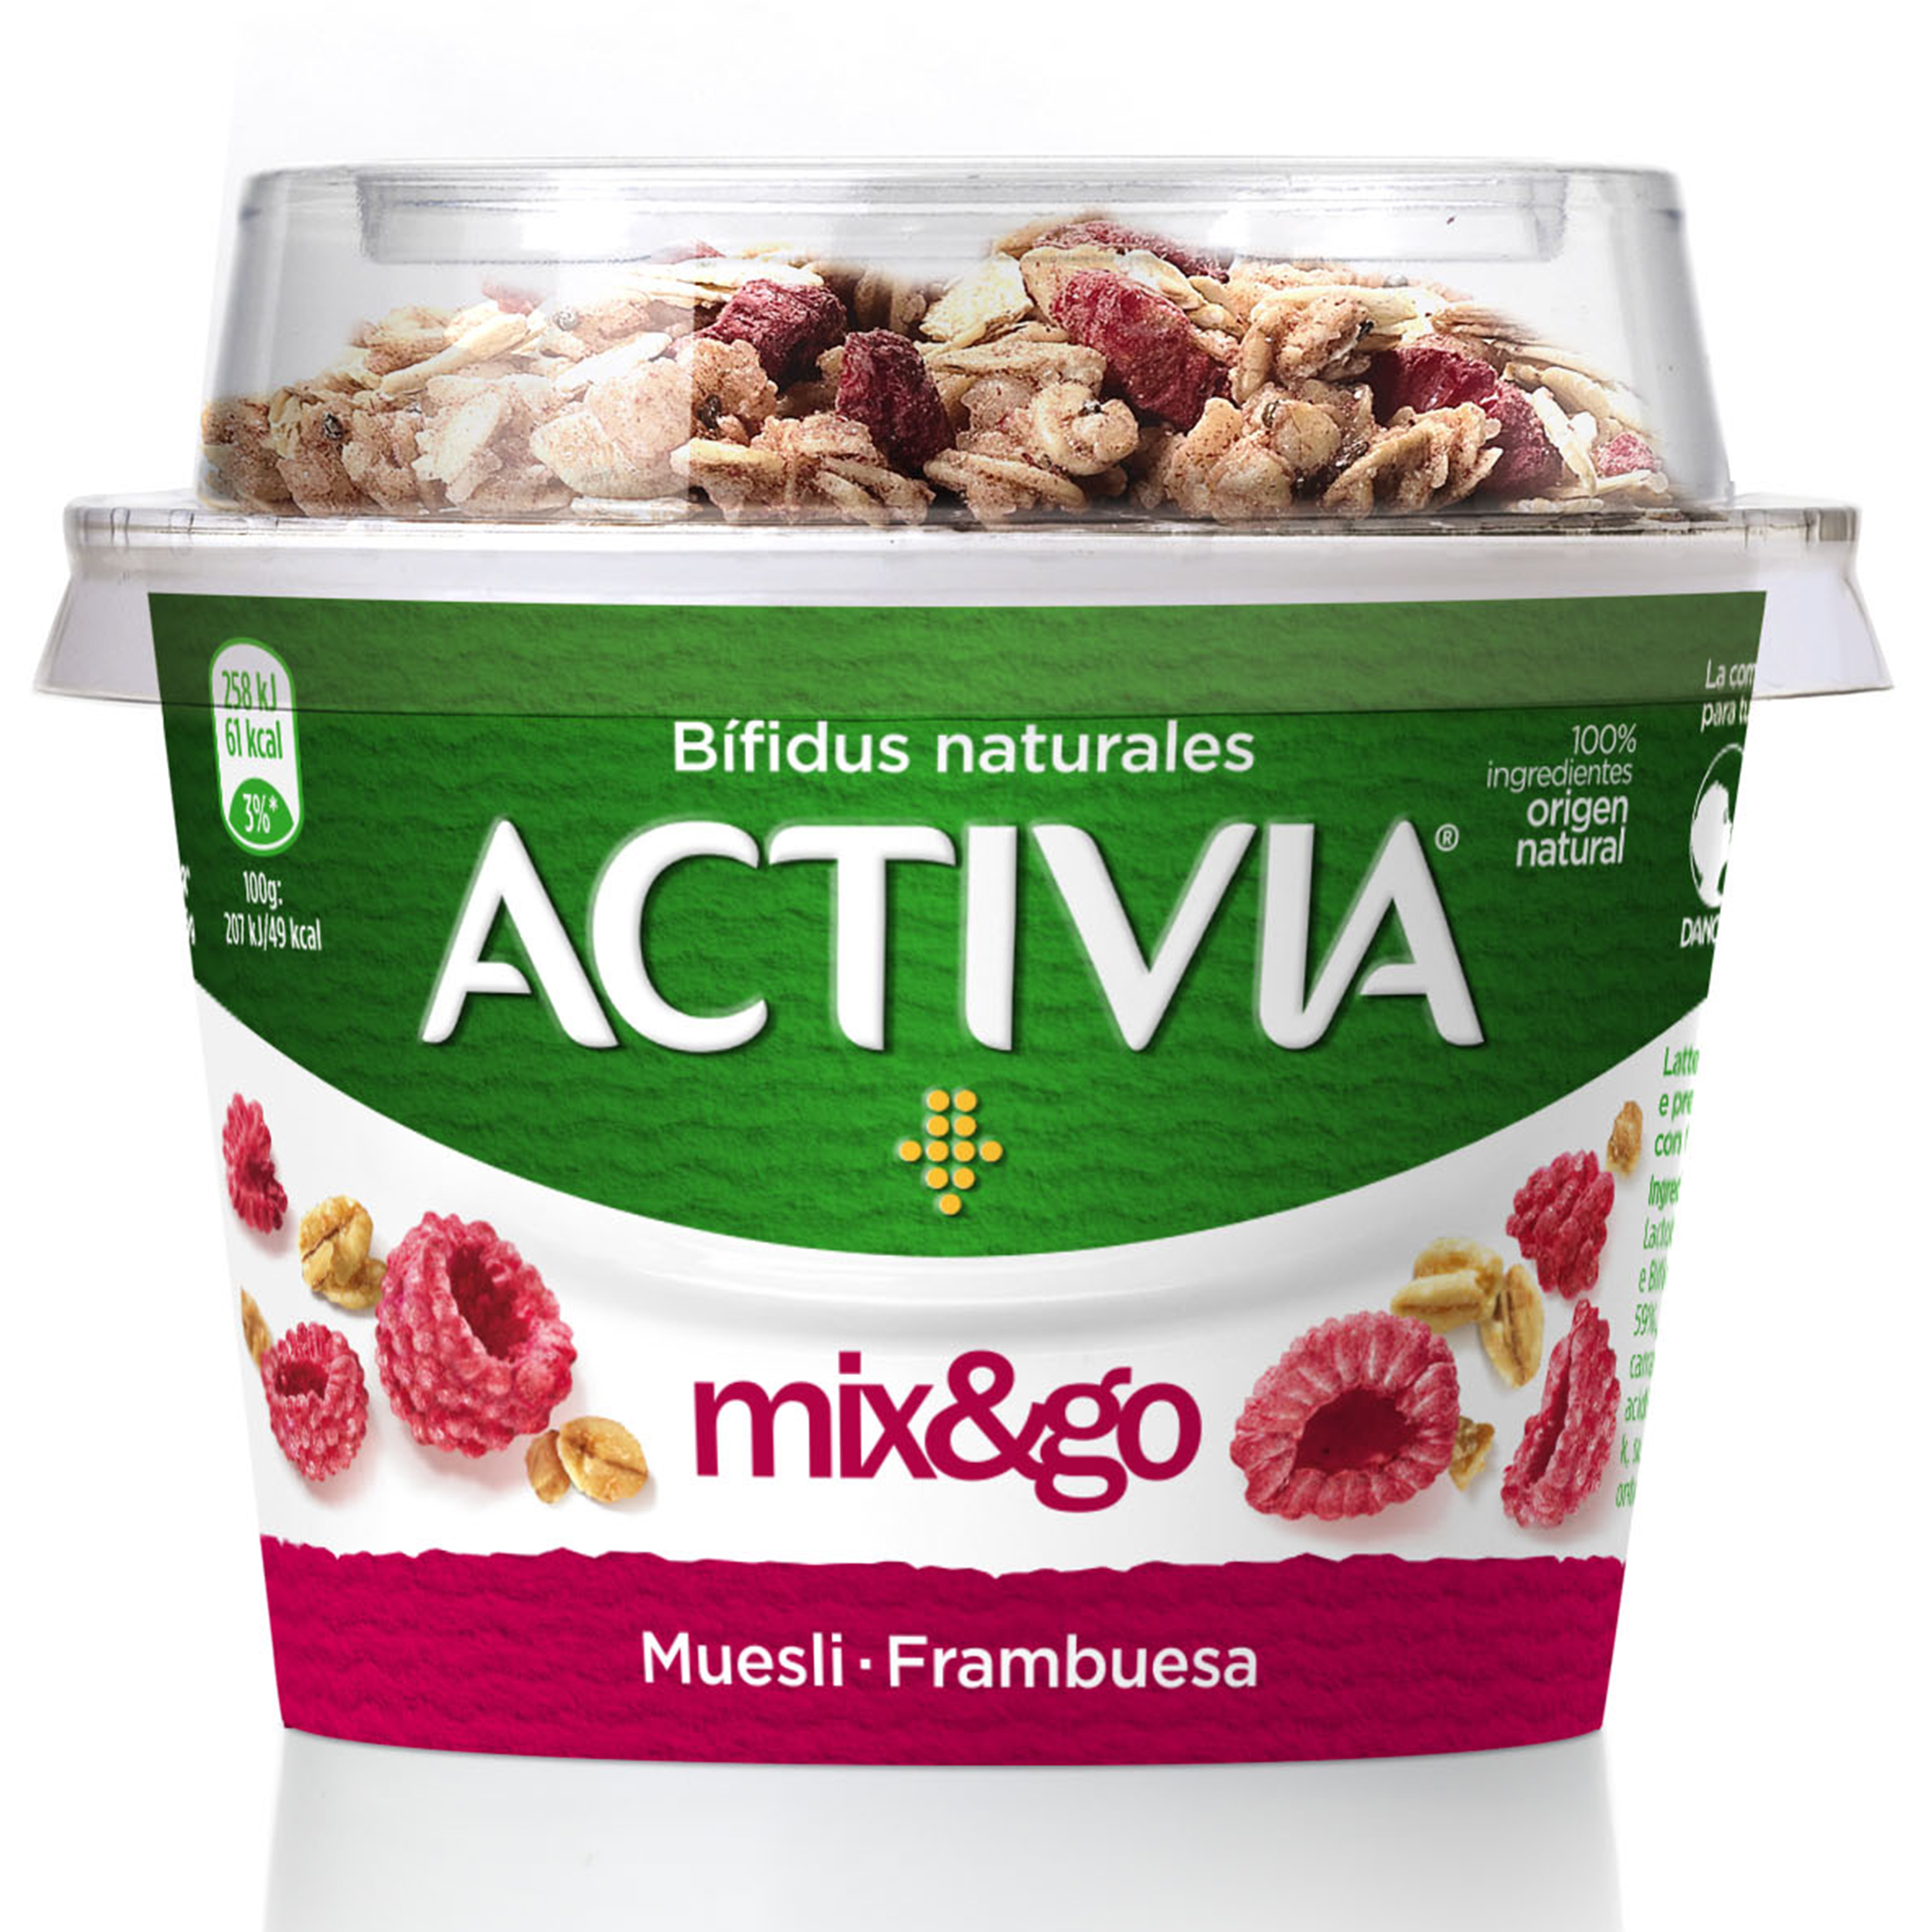 Danone entra en yogures sin lactosa con 'Activia' - Noticias de  Alimentación en Alimarket